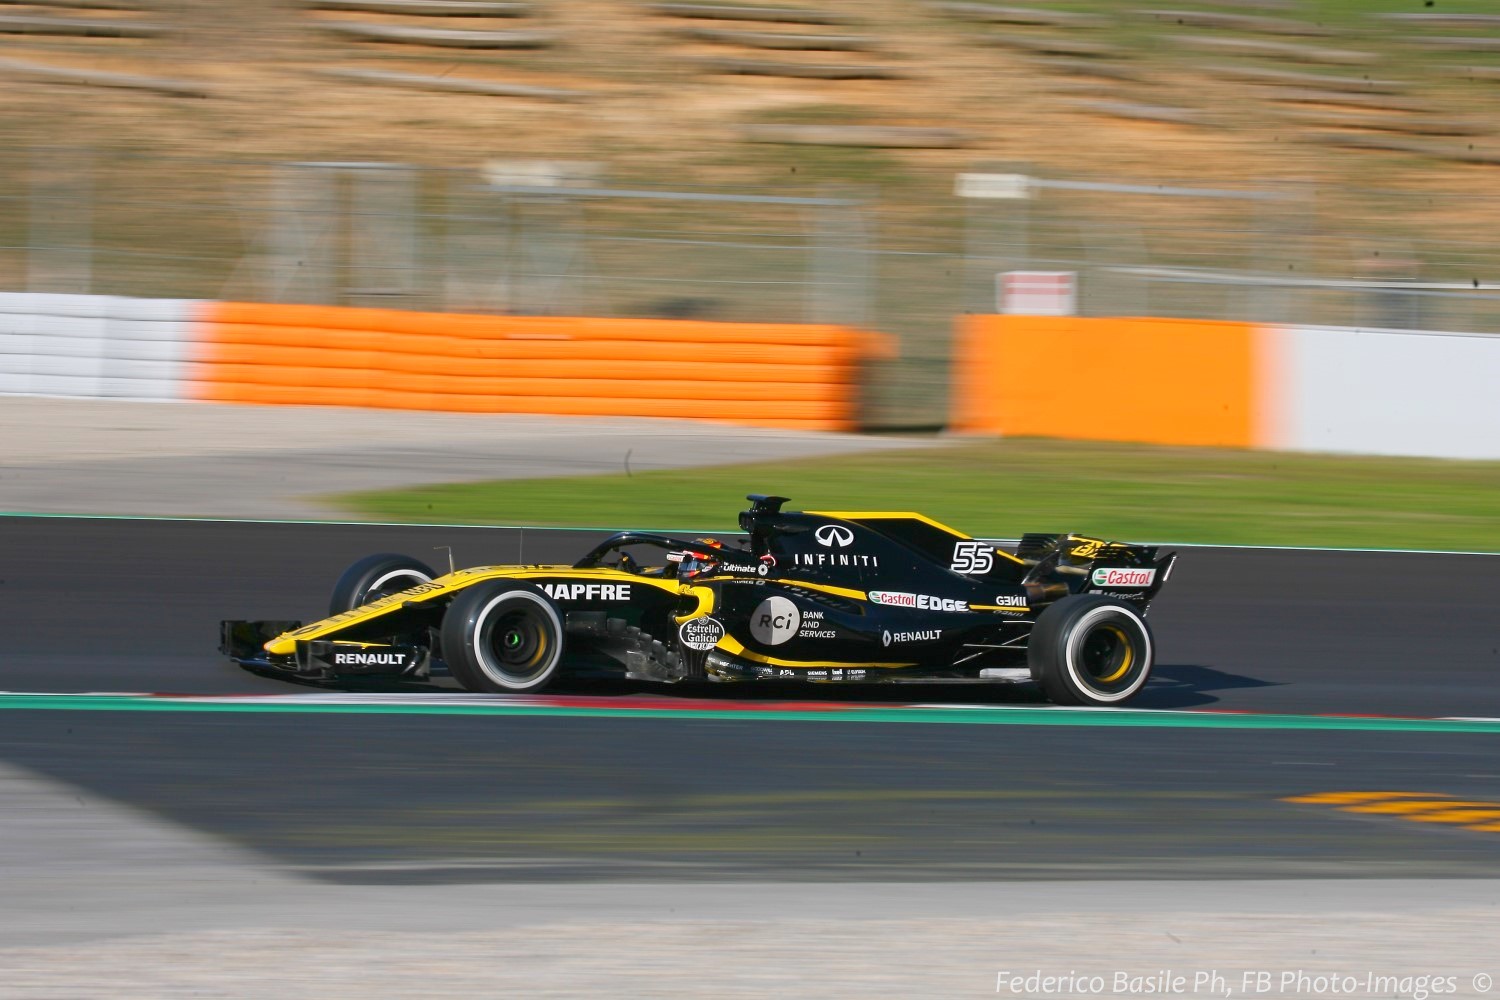 Teammate Carlos Sainz Jr. in the new Renault